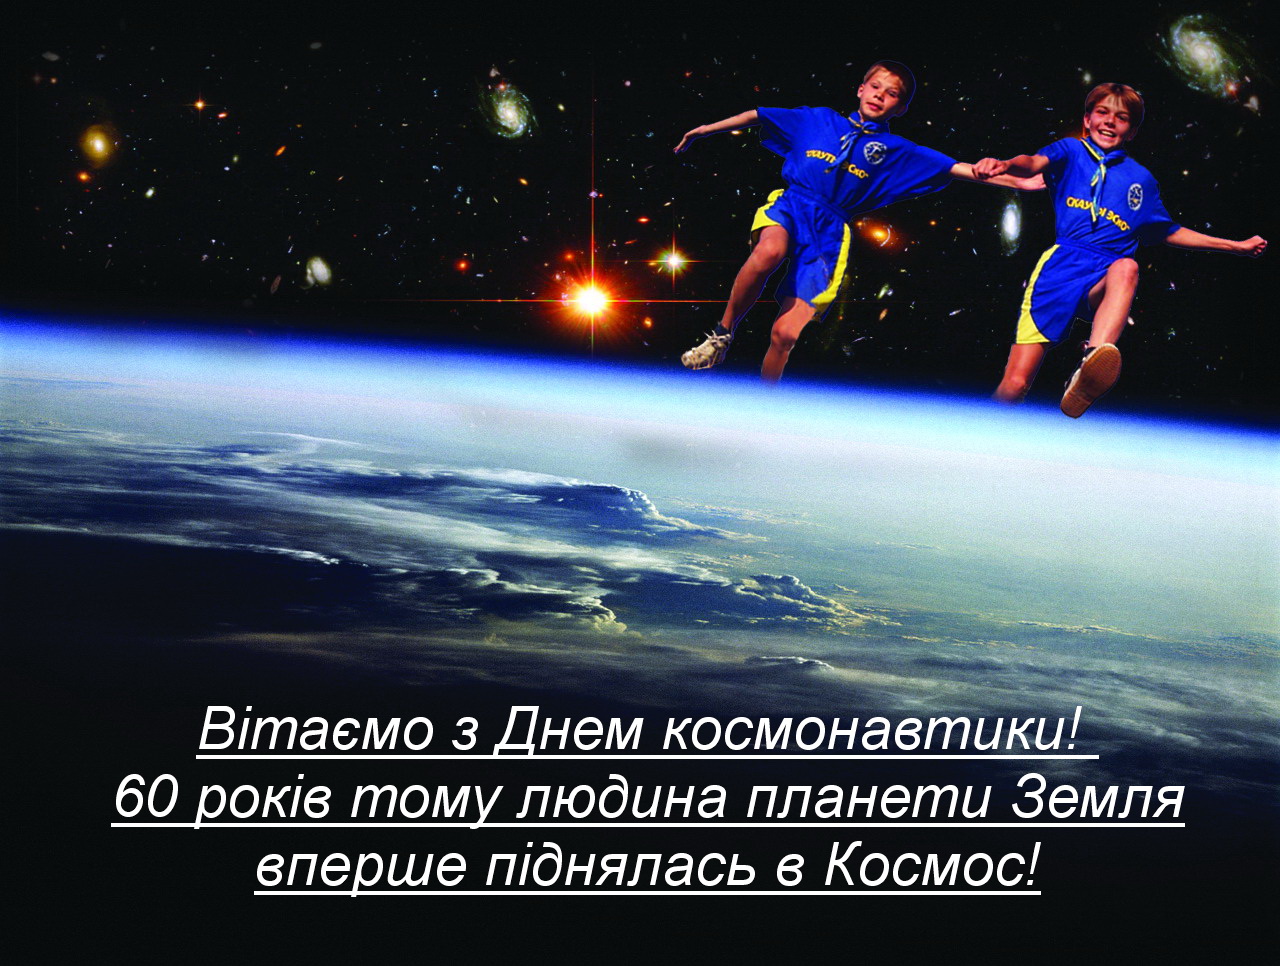 Конкурс фантастических проектов  к Дню космонавтики.